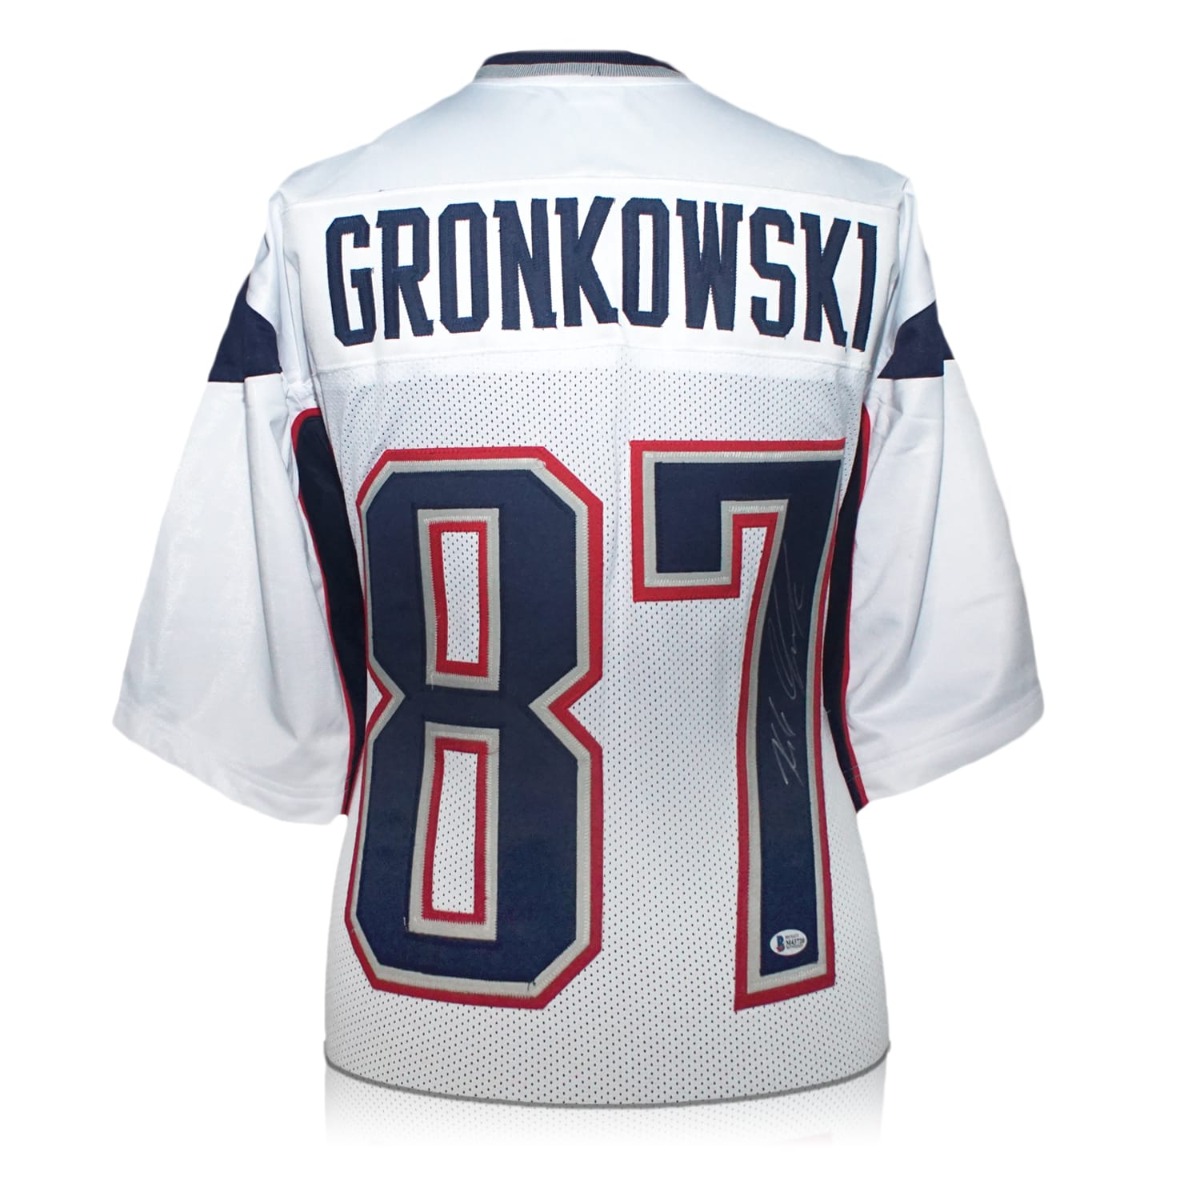 gronkowski football jersey